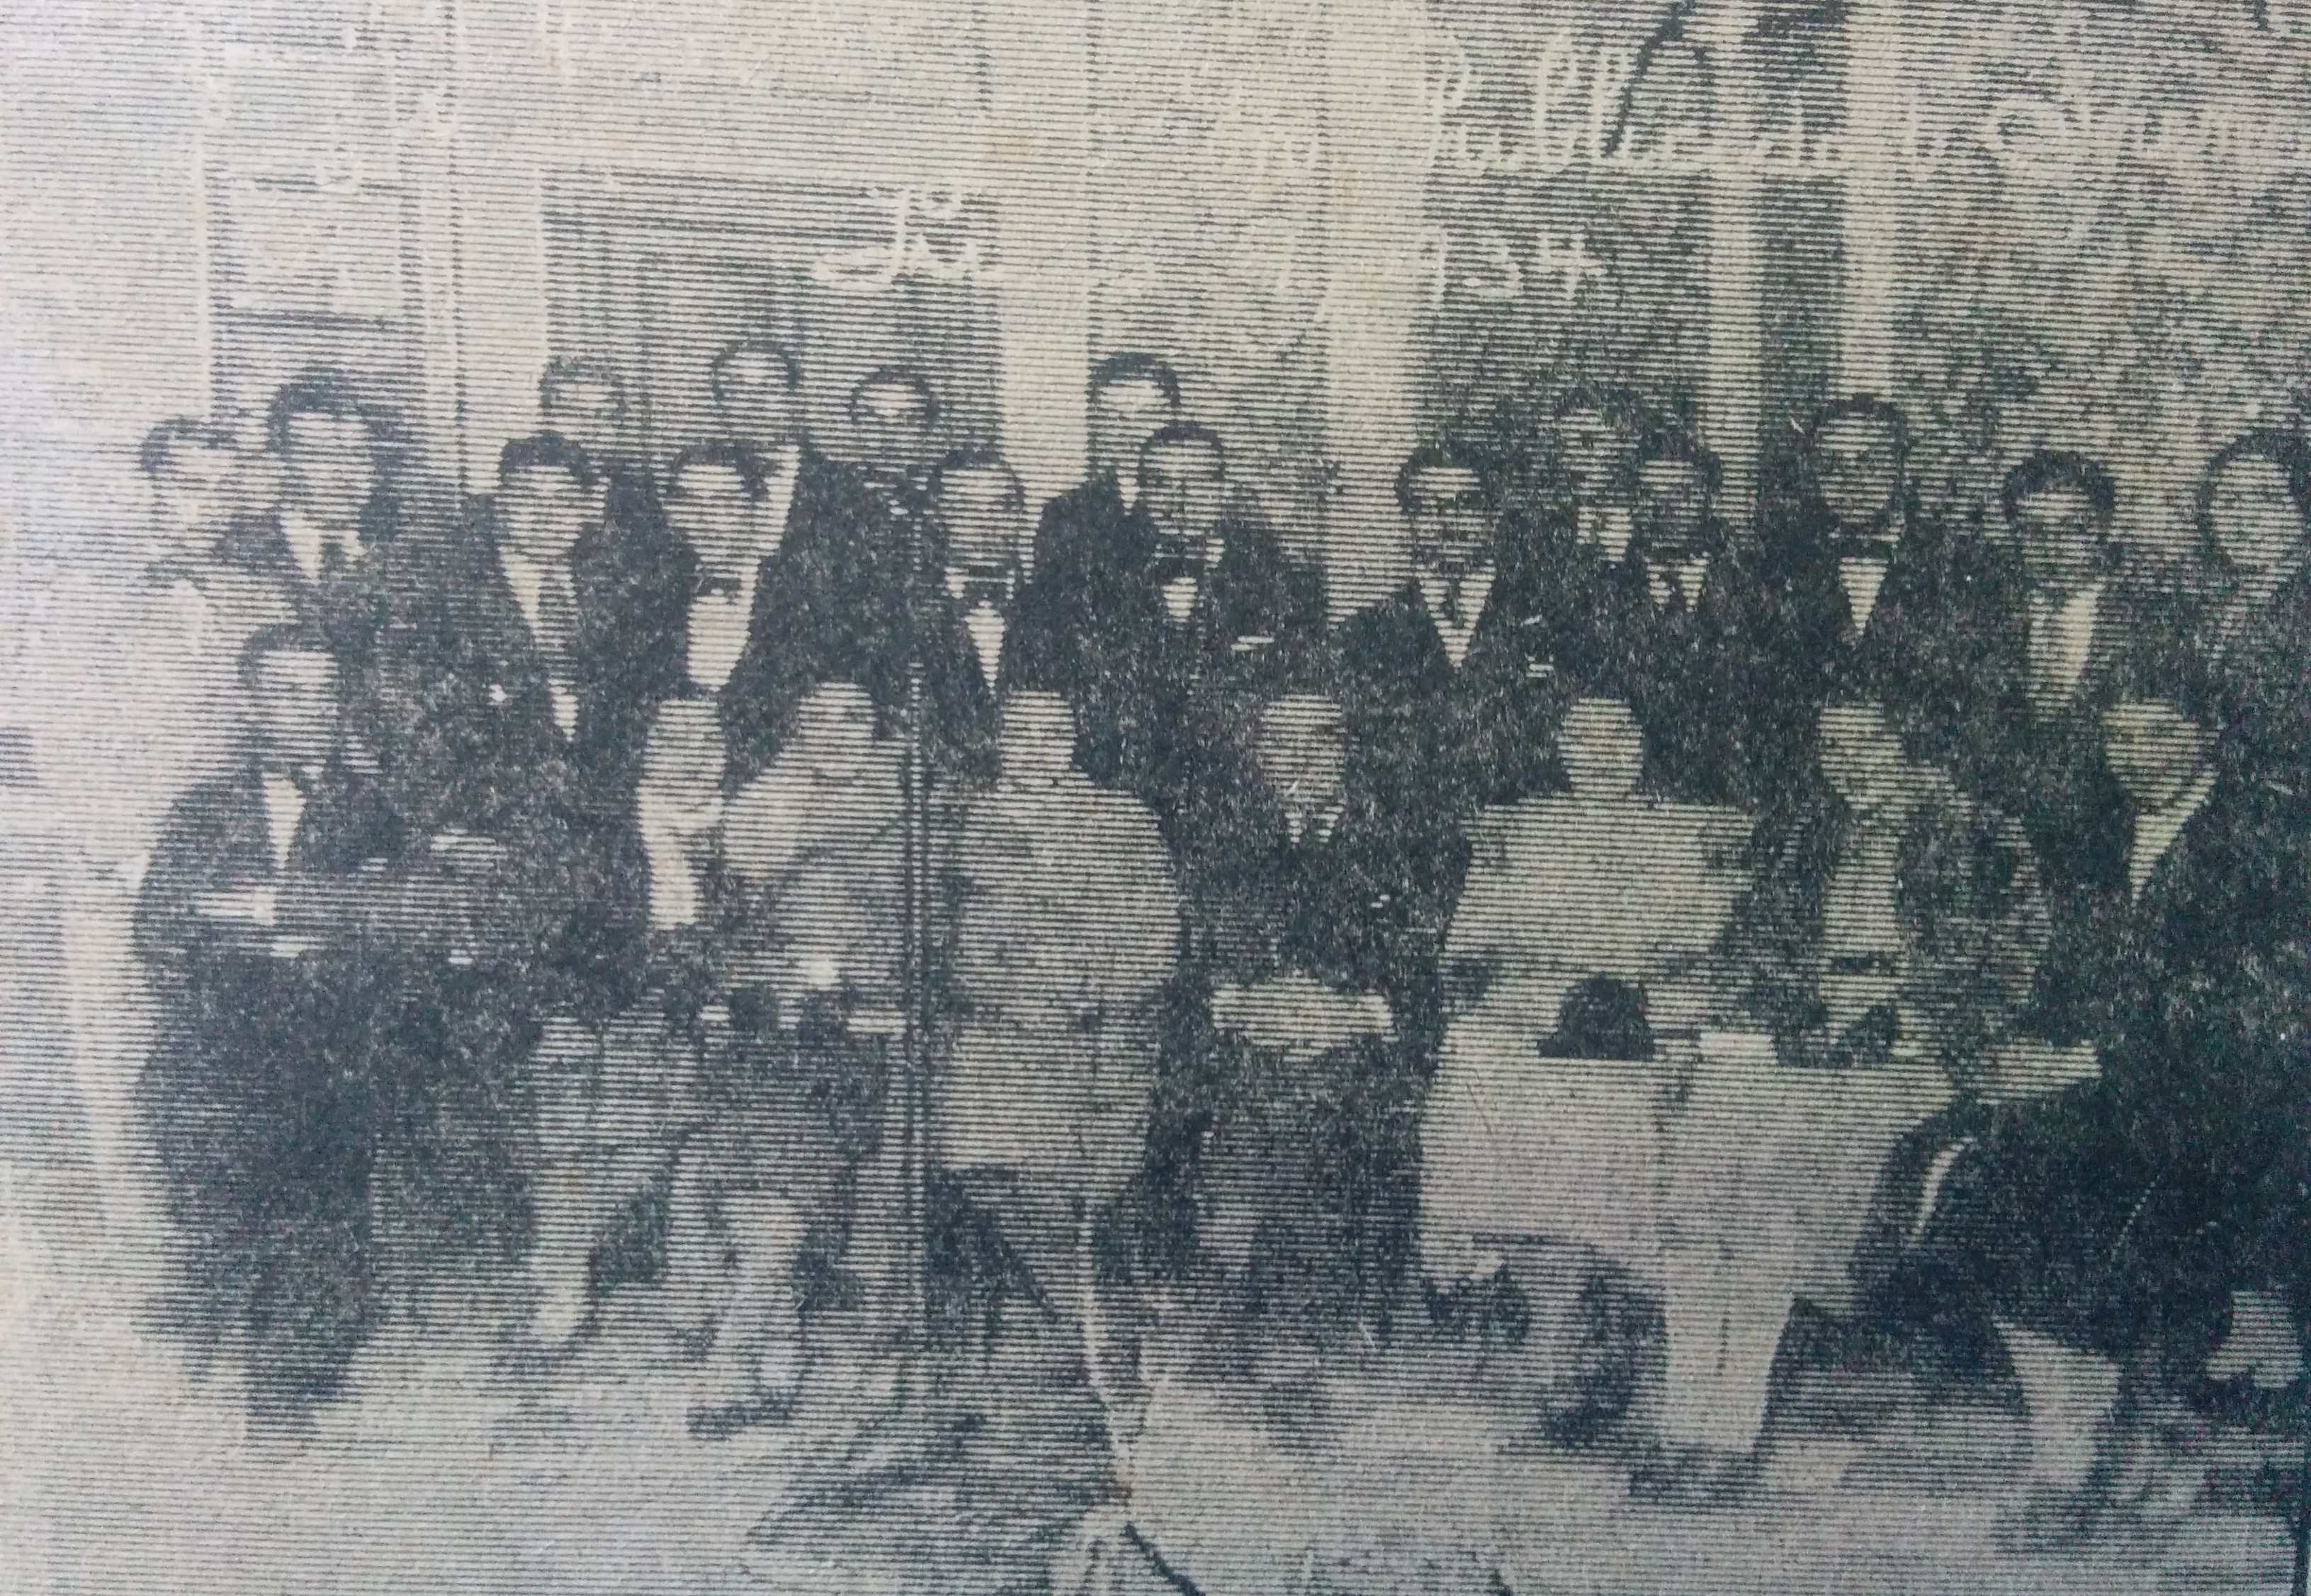 Inauguración de la difusora local, Publicidad "Sirena", el 9 de julio de 1934, con la presencia de Don José Tito Ranni, distintos intérpretes musicales, y público en general.